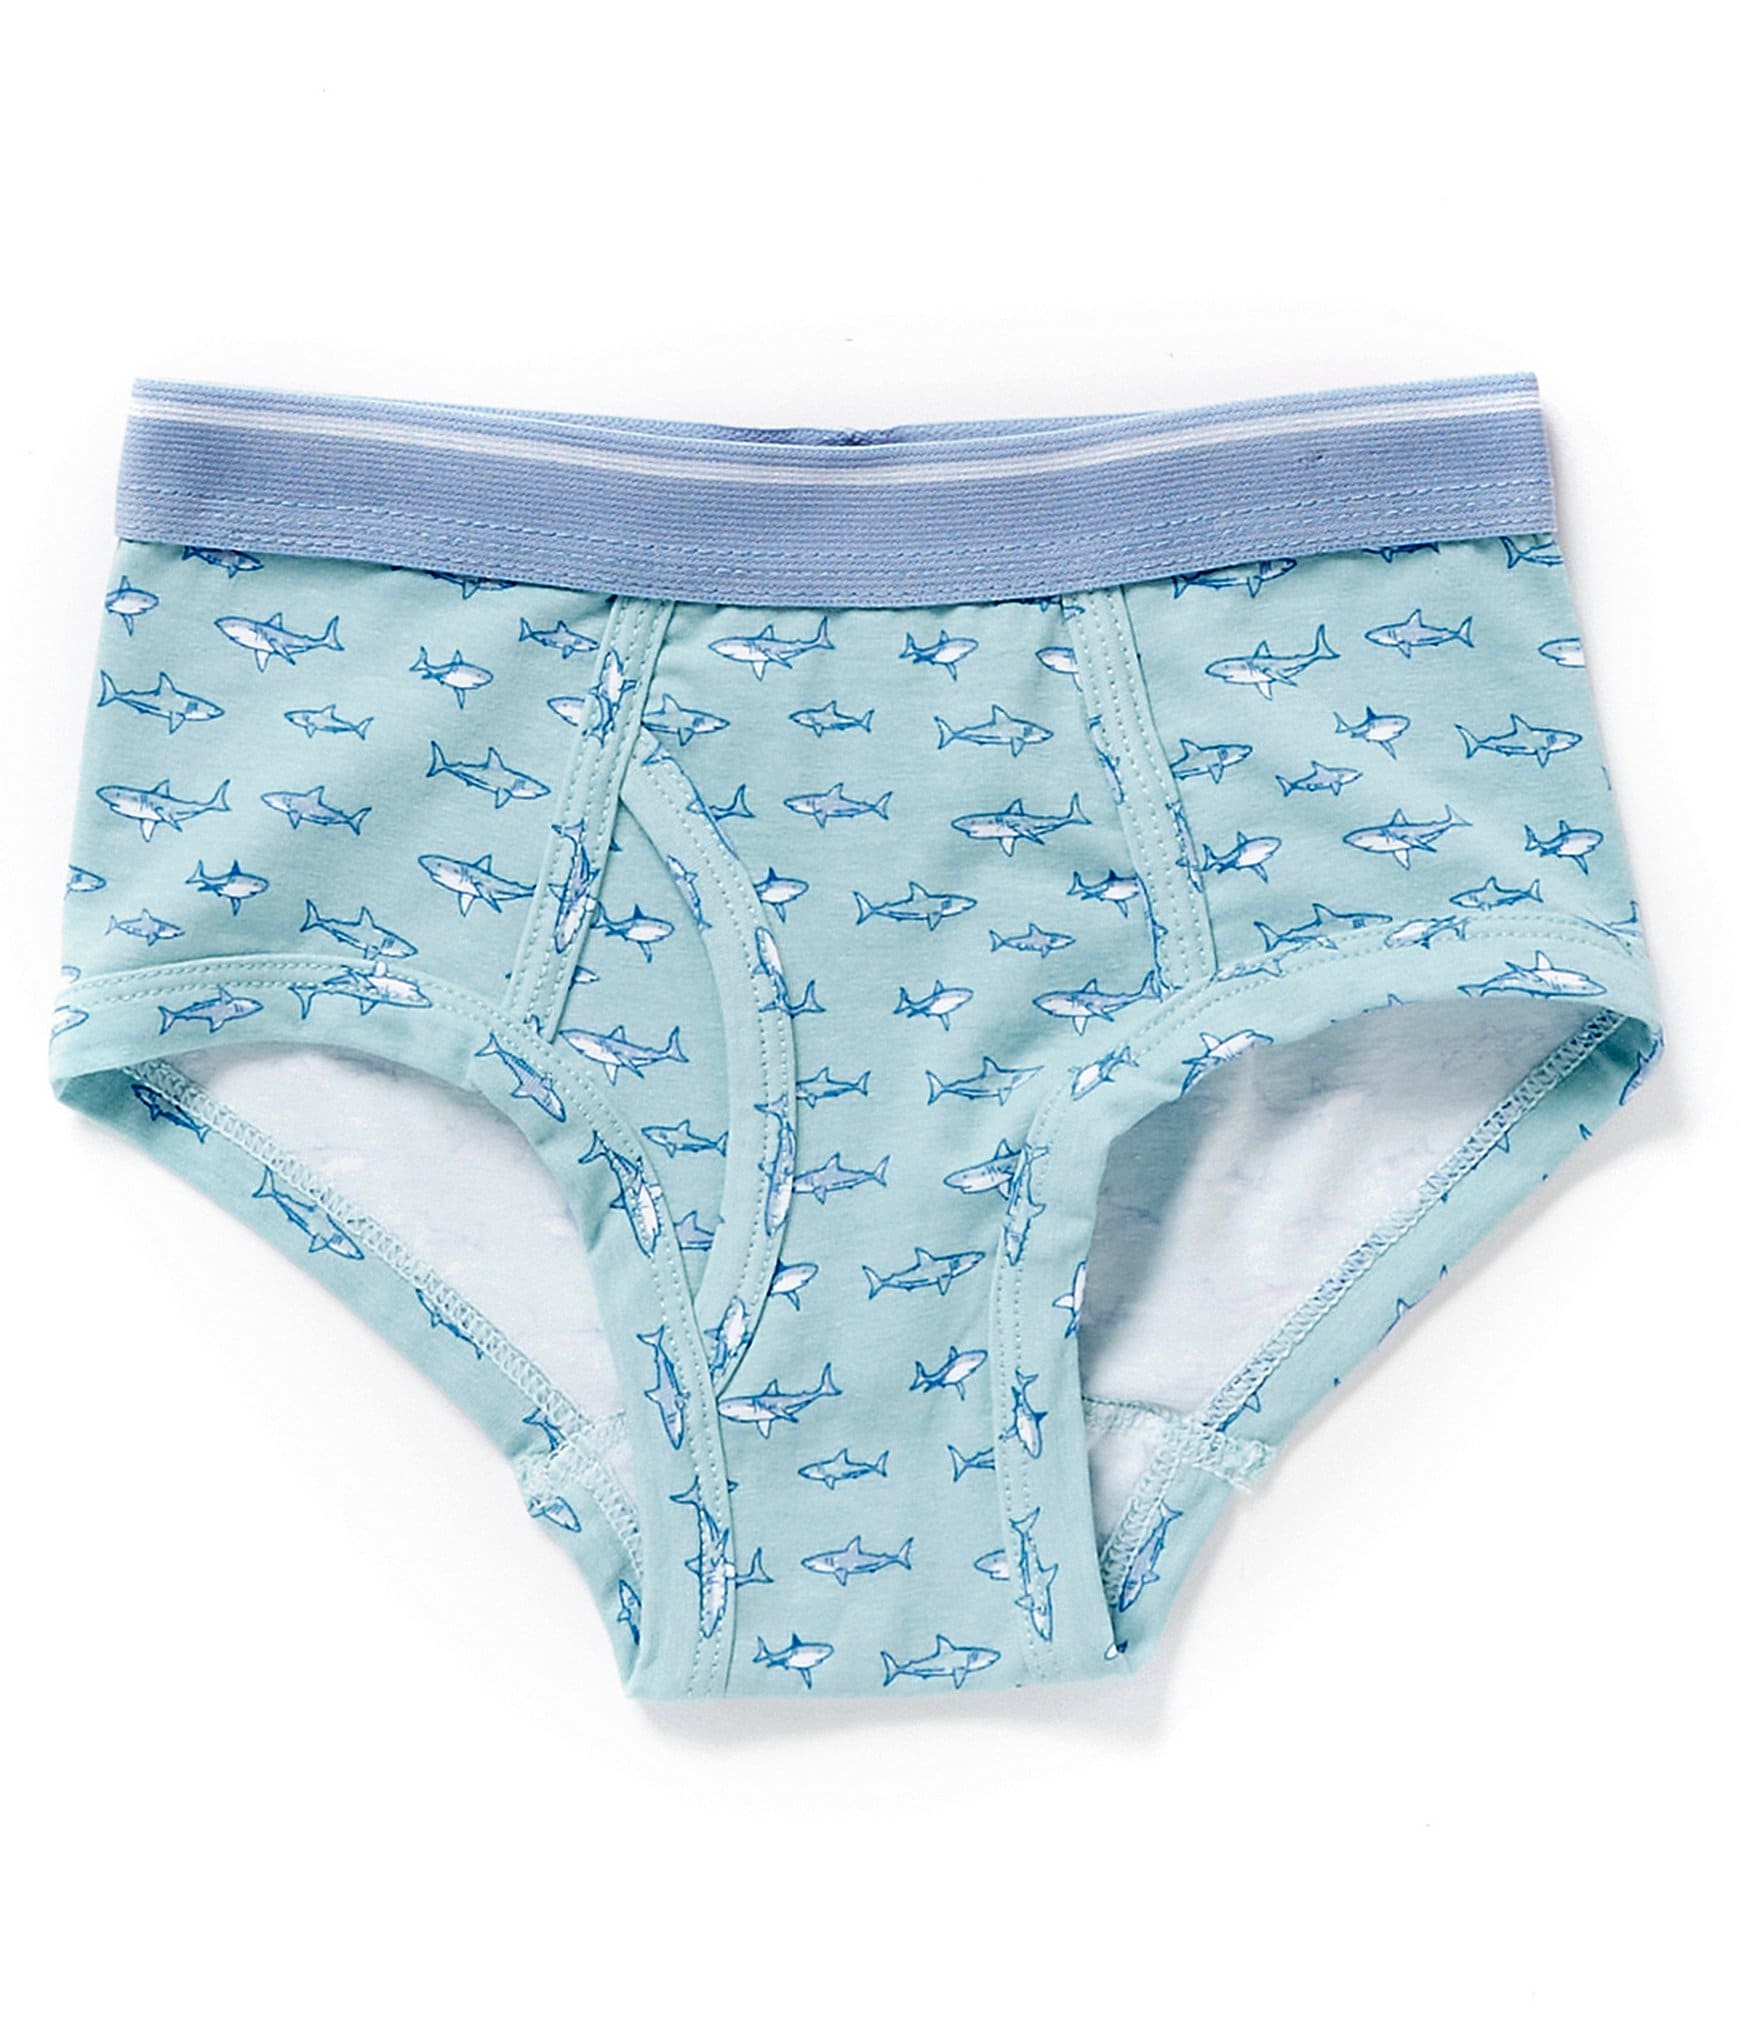 Toddler Boys (2T-5T) Basic Underwear in Boys Basic Underwear 